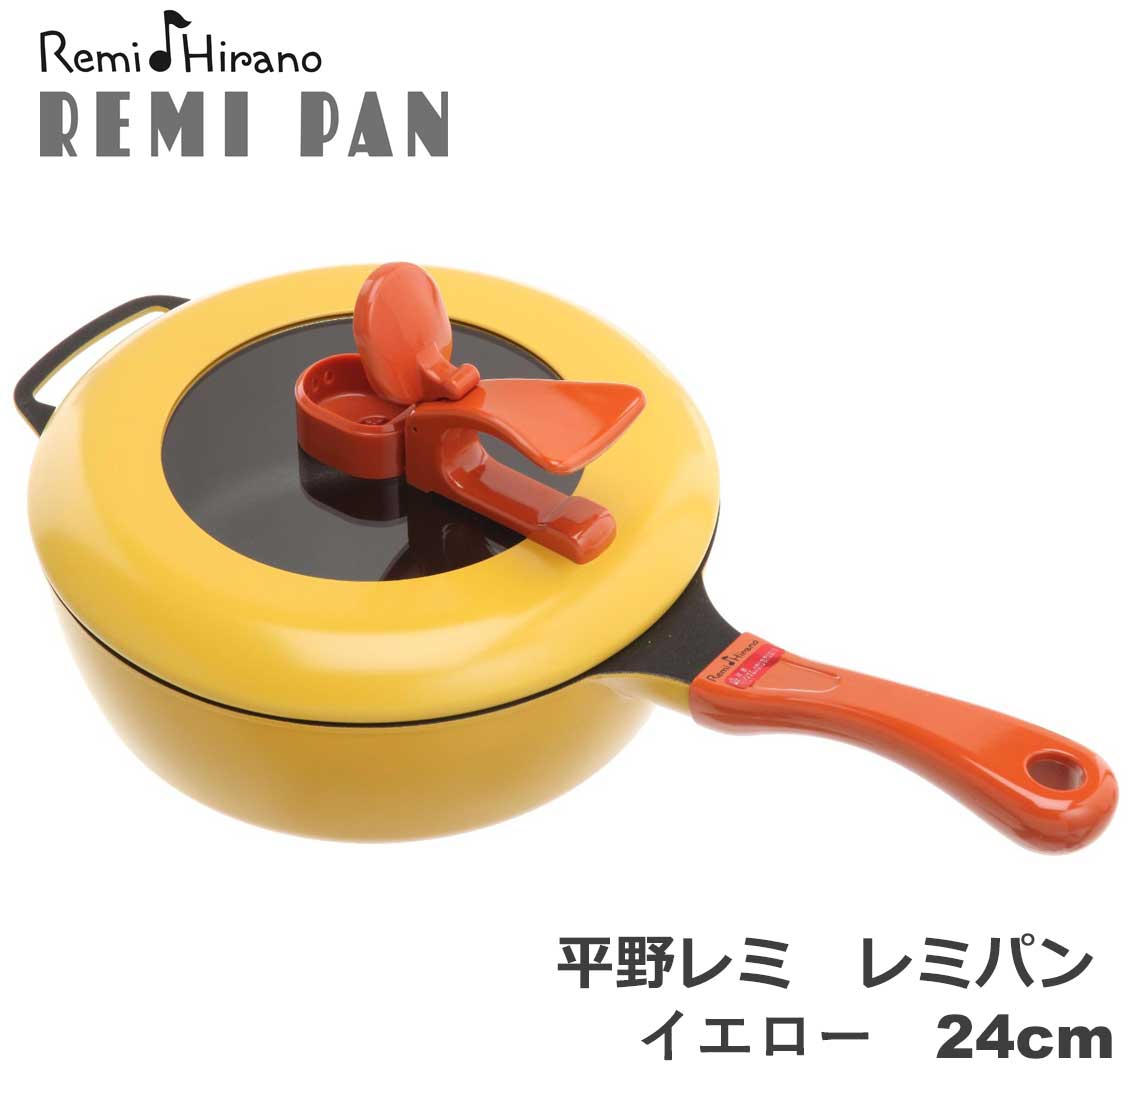 ☆新品☆ 平野レミ 「レミパン」 24cm RHF-200 イエロー - 鍋/フライパン